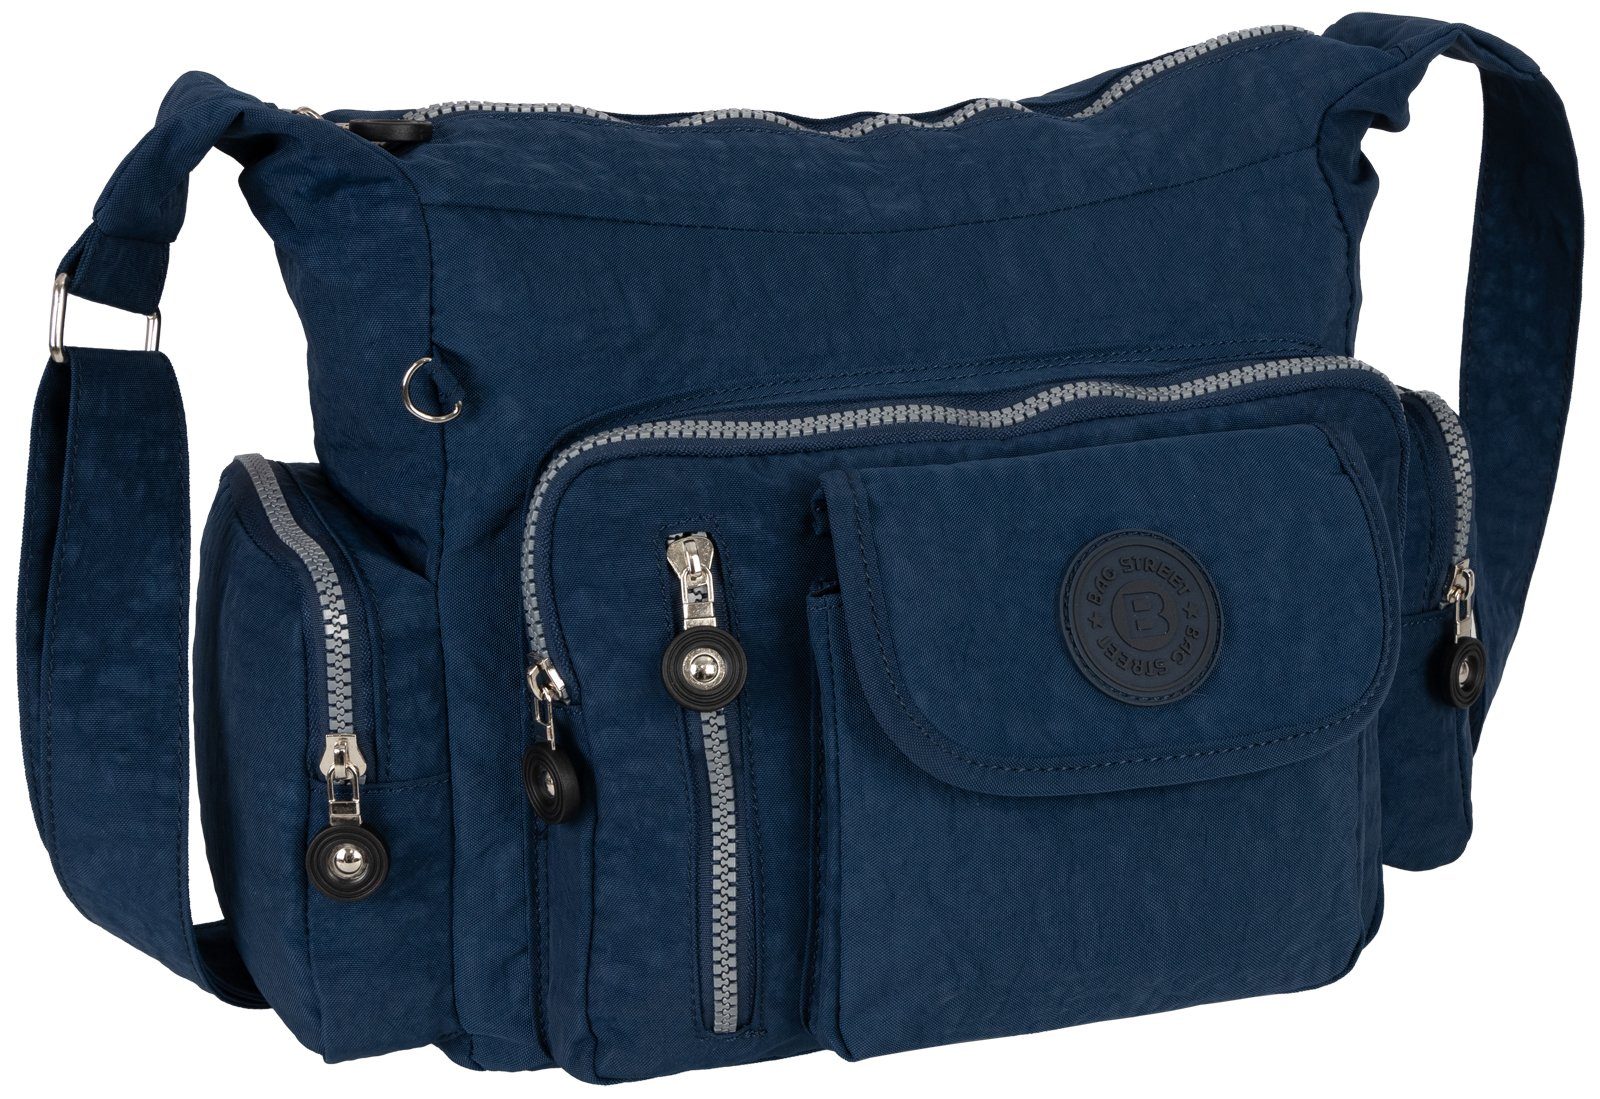 BAG STREET Umhängetasche Damentasche Umhängetasche tragbar als Taupe, Schultertasche Umhängetasche Schultertasche, Blau Handtasche